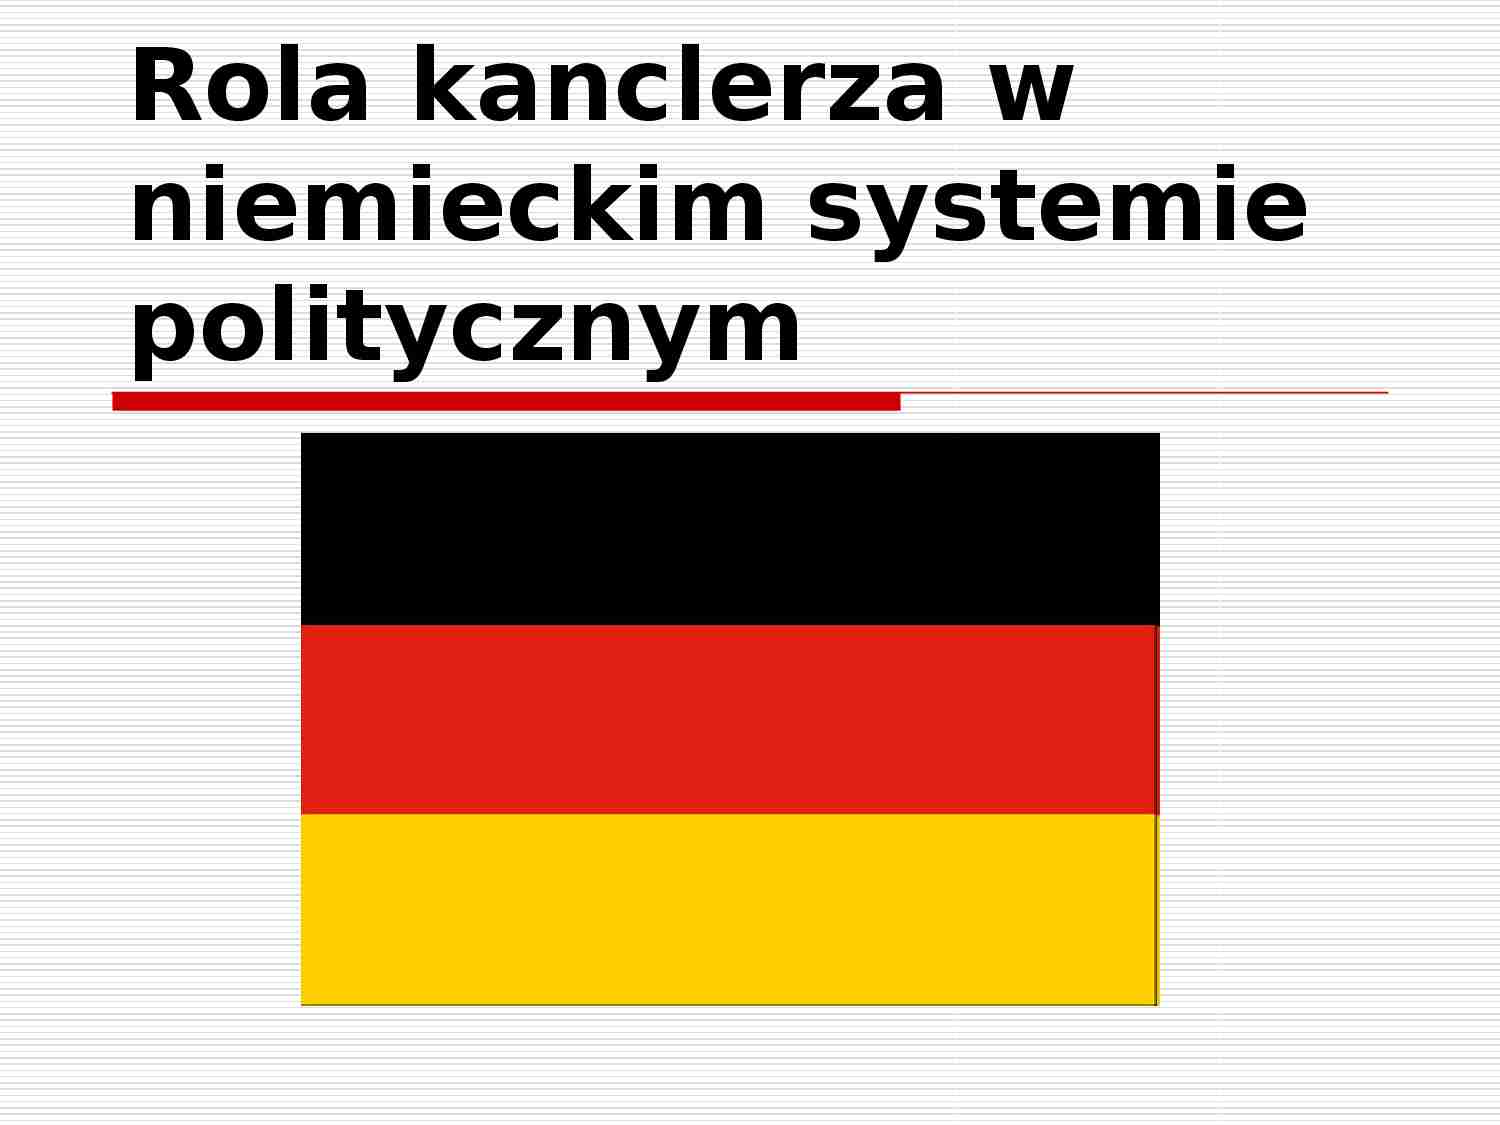 Rola kanclerza w niemieckim systemie politycznym-prezentacja - strona 1